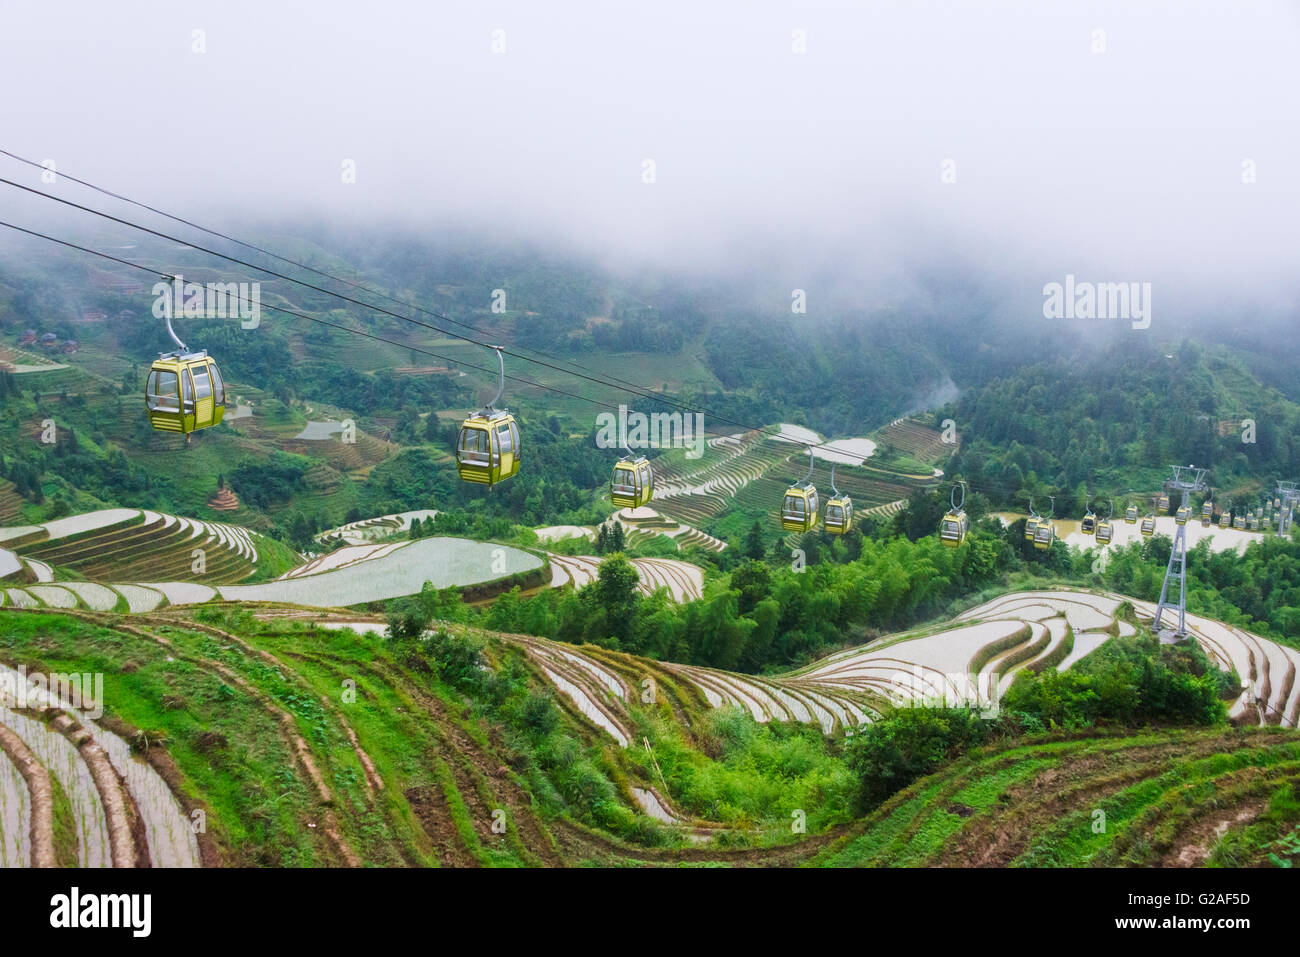 Aerial Tram au-dessus les rizières en terrasses dans la montagne, Dazhai, Guangxi Province, China Banque D'Images